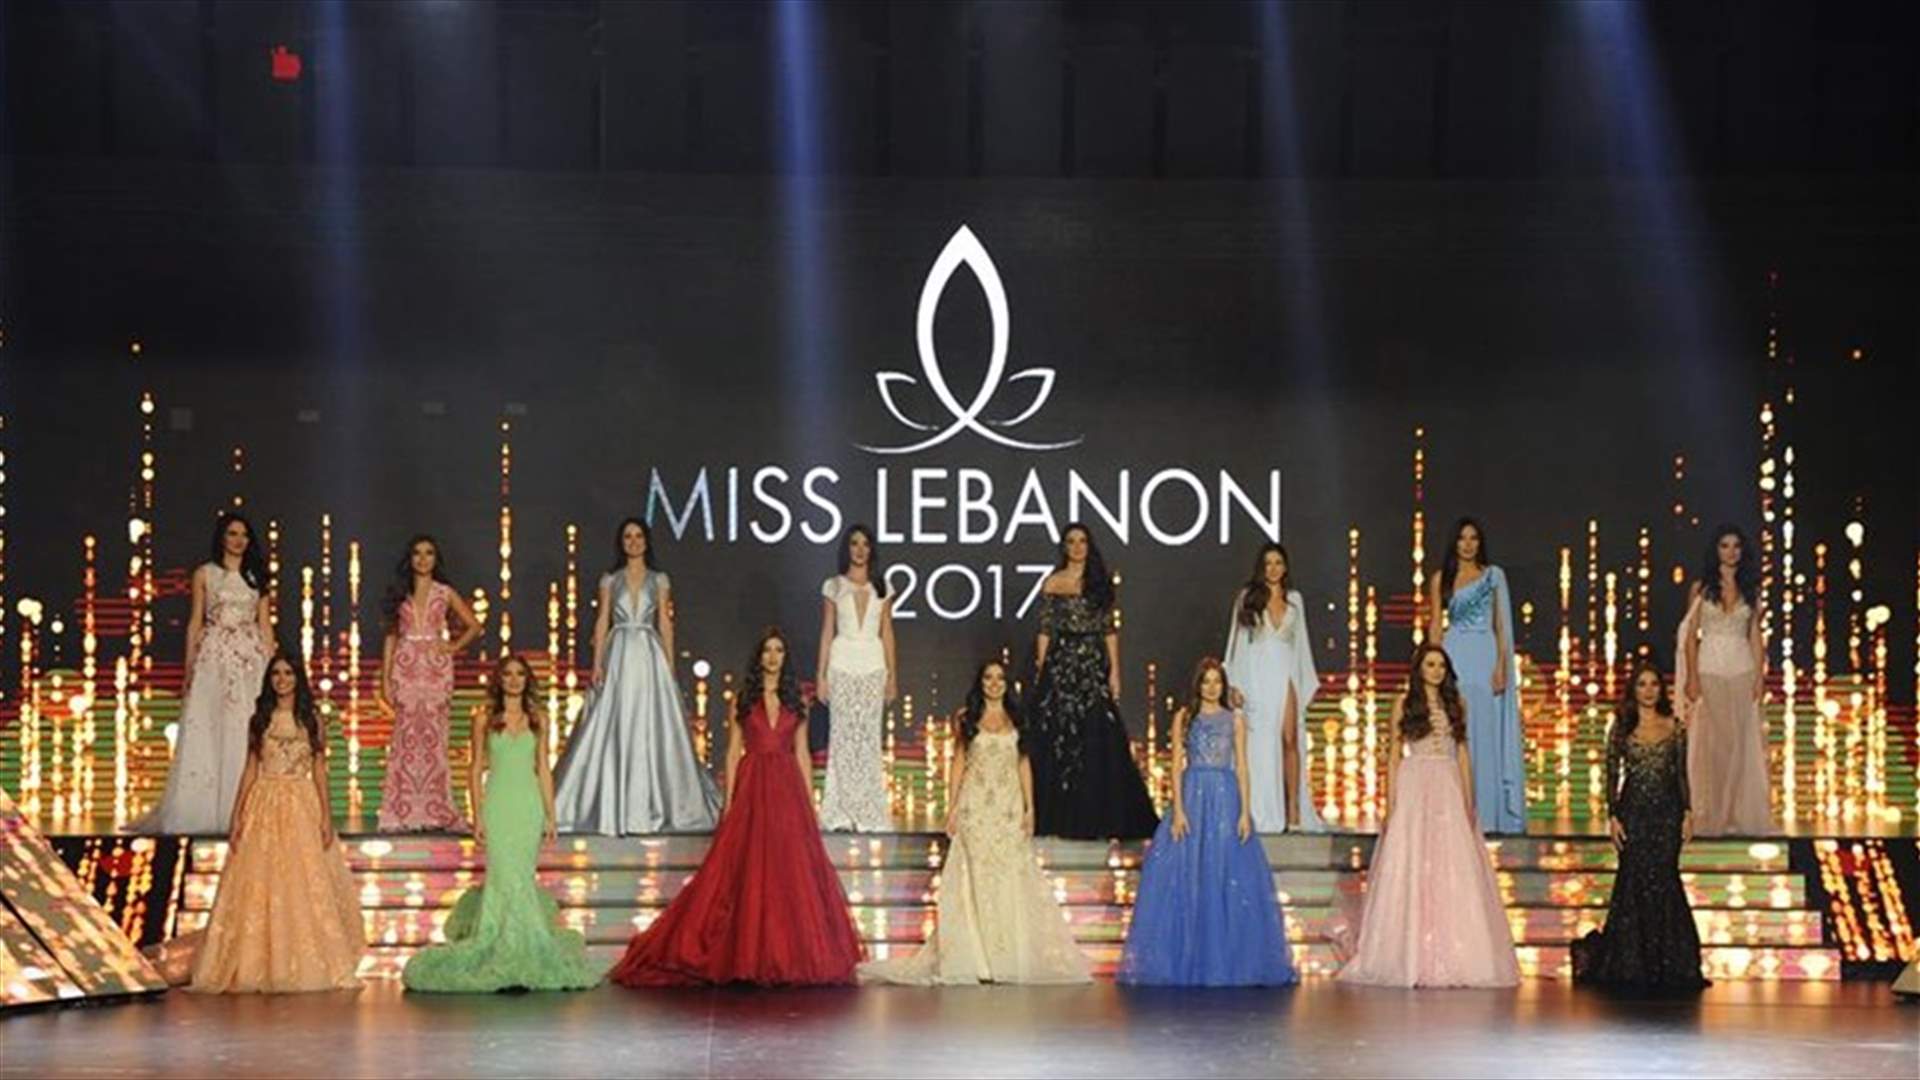 بالصور- فساتين جورج حبيقة زينت مشتركات ملكة جمال لبنان لعام 2017